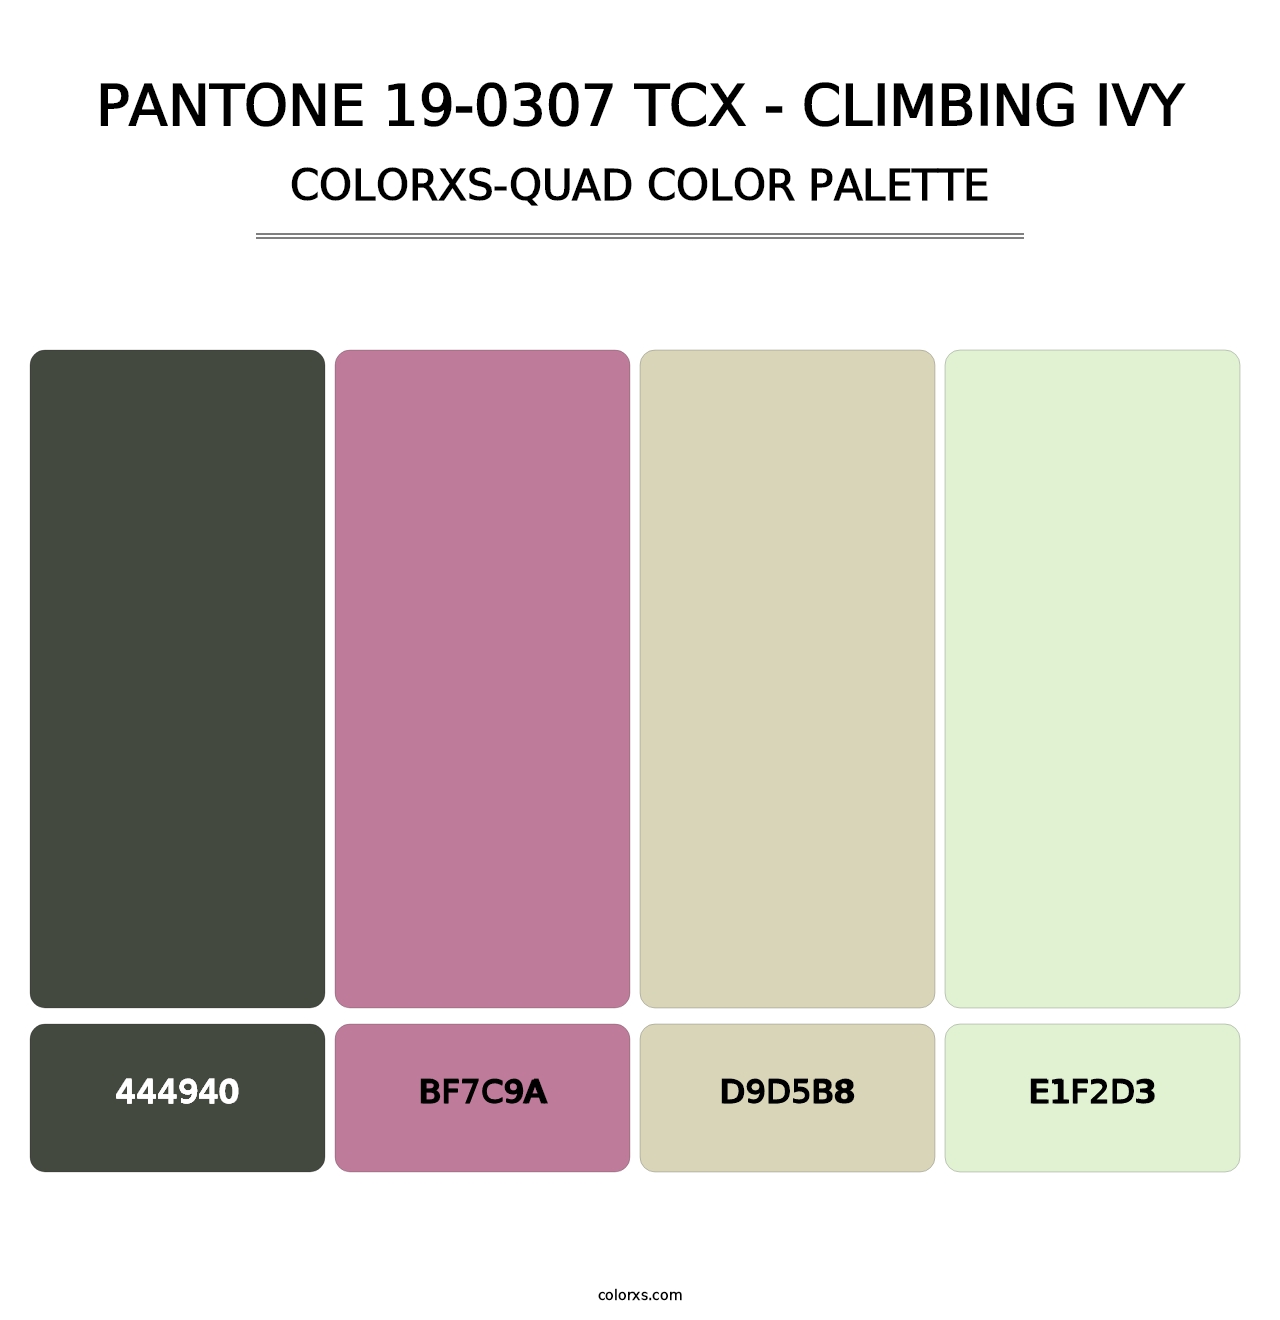 PANTONE 19-0307 TCX - Climbing Ivy - Colorxs Quad Palette